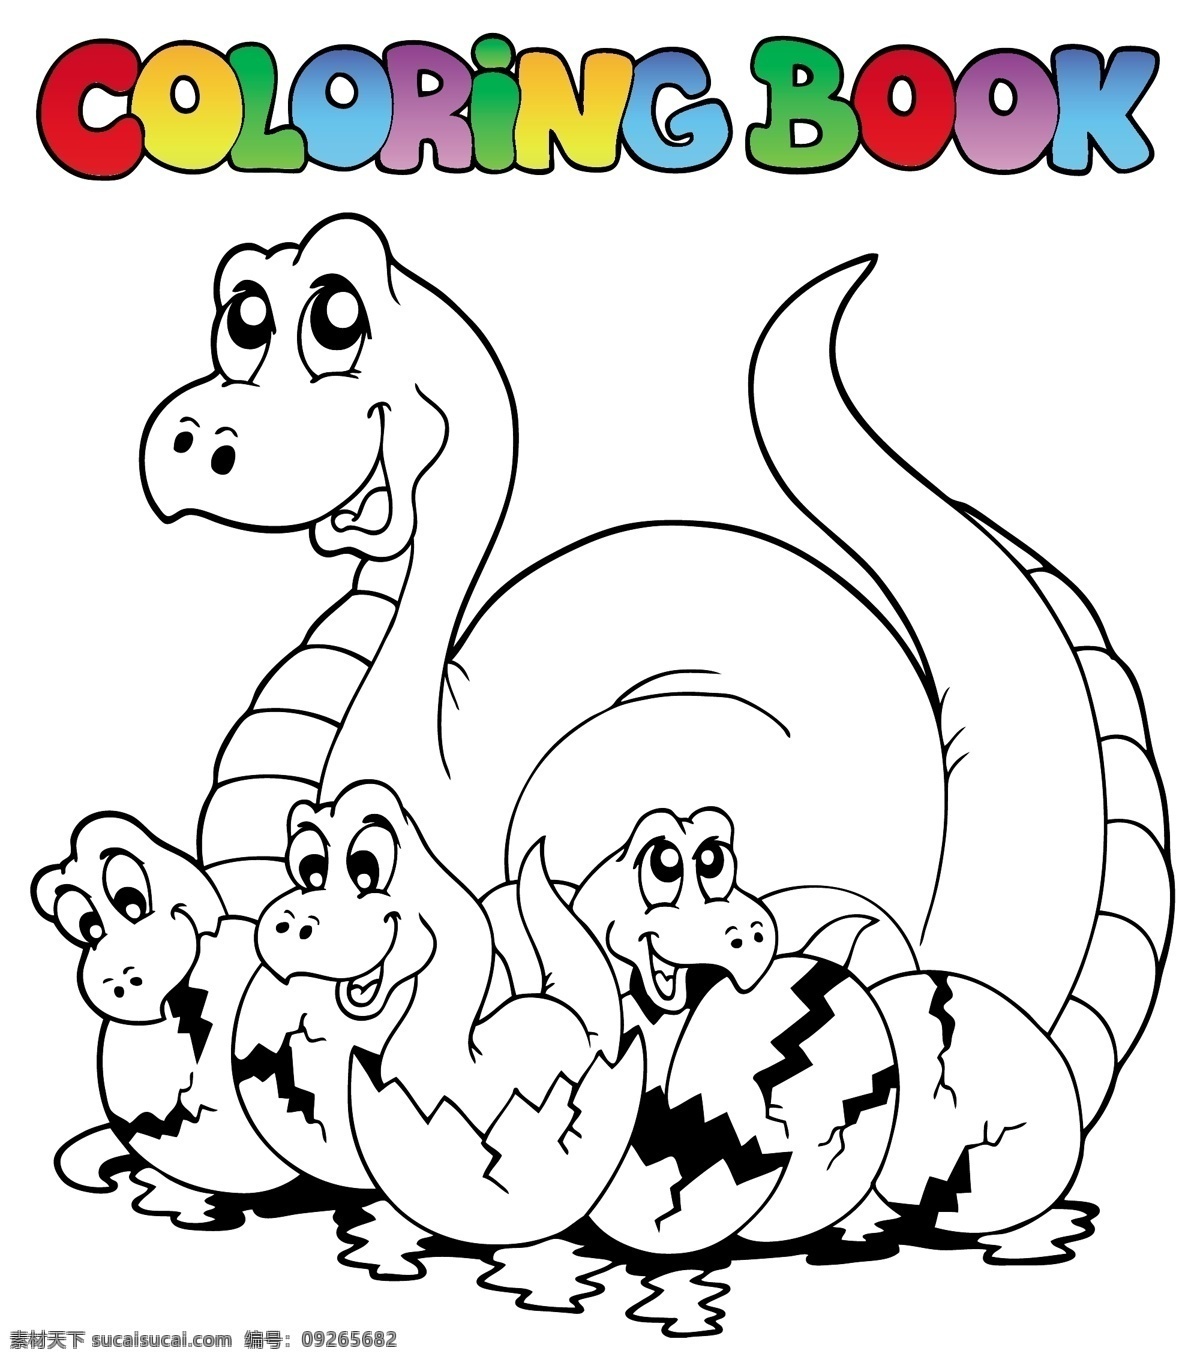 儿童着色绘画 卡通插画 恐龙 手绘插图 卡通背景 黑白彩绘底图 轮廓 填图背景 卡通动物 背景底纹 卡通设计 矢量 文化艺术 绘画书法